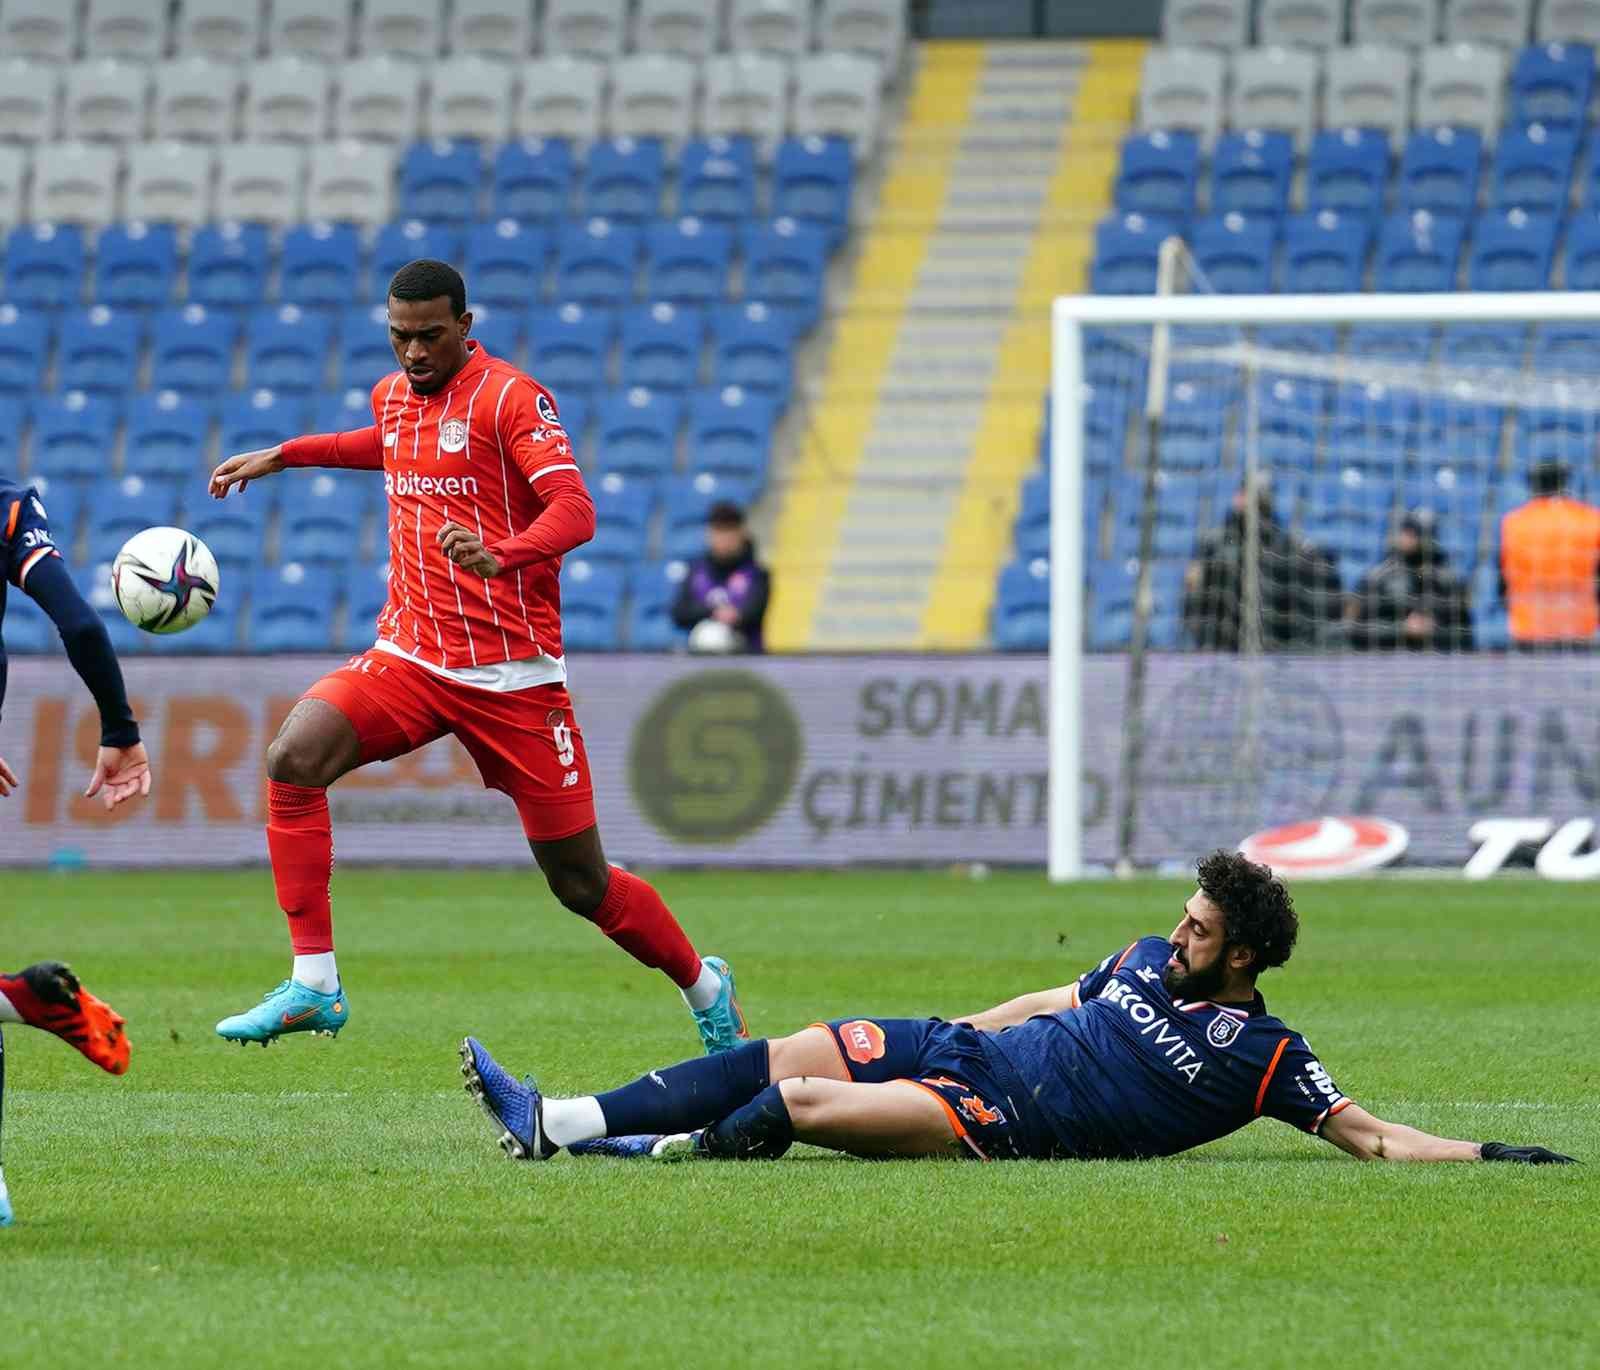 Spor Toto Süper Lig’in 29. haftasında Medipol Başakşehir, Antalyaspor’u ağırlıyor. Mücadelenin ilk yarısı Antalyaspor’un 1-0 üstünlüğü ile ...